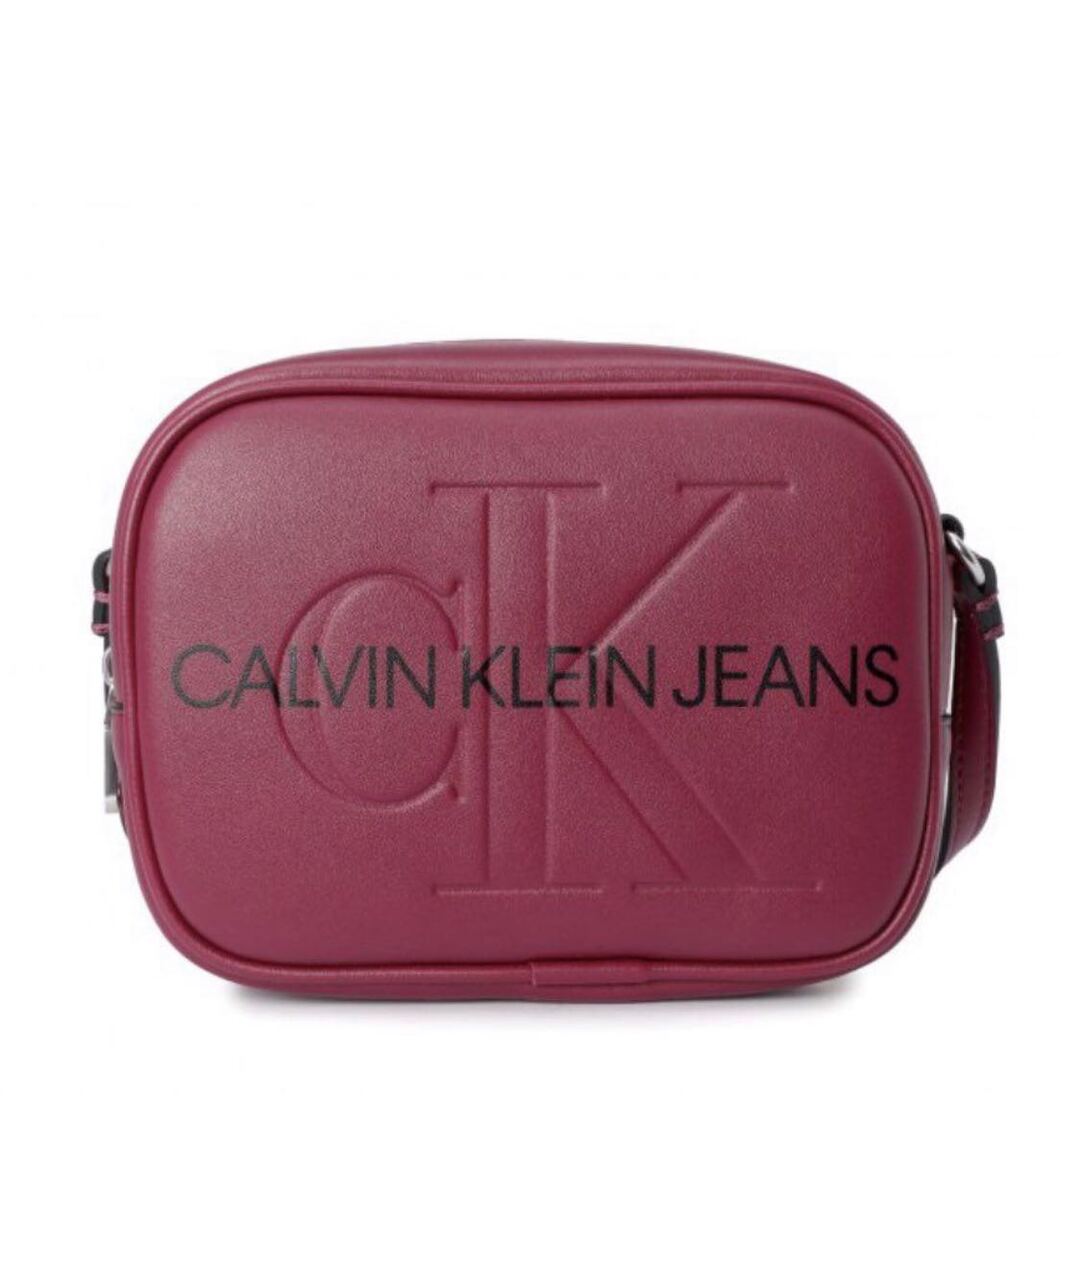 CALVIN KLEIN JEANS Бордовая сумка через плечо из искусственной кожи, фото 1